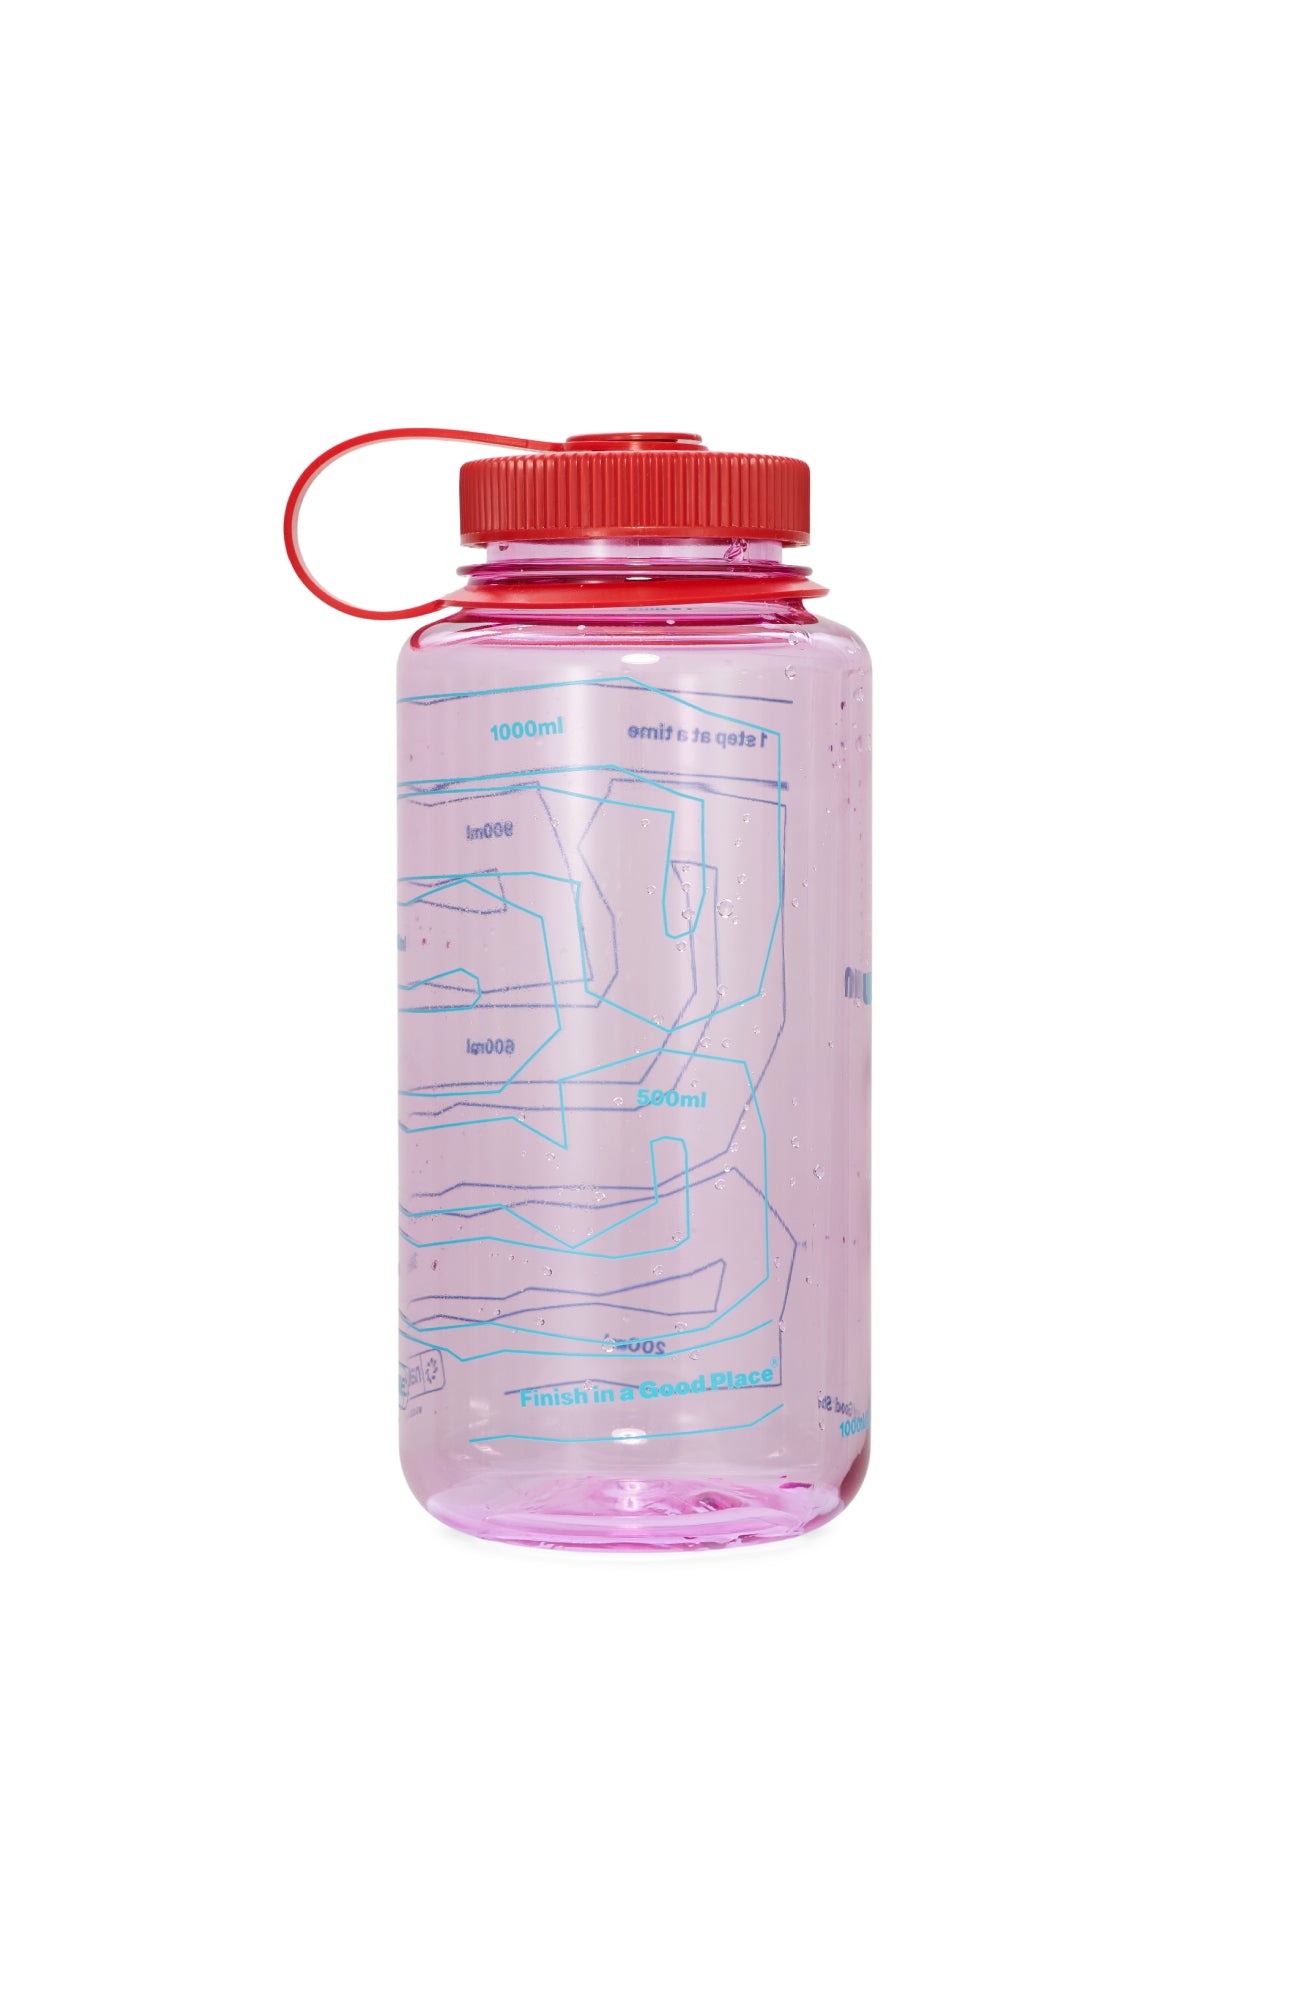 1 liter Nalgene bottle. Cosmo pink with dark red details